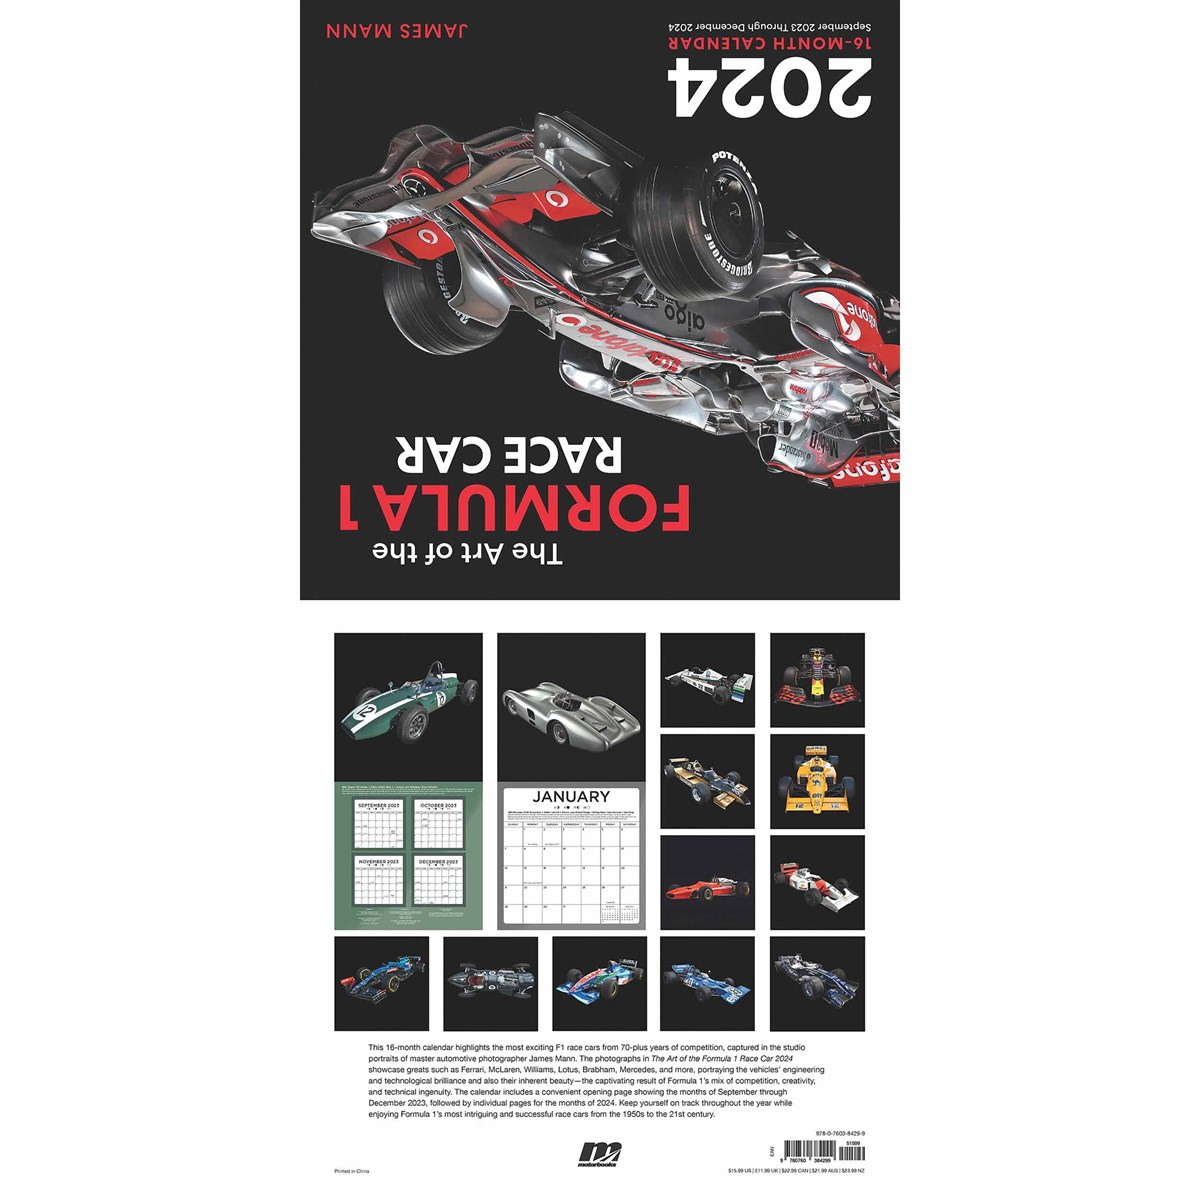 The Art Of The Formula 1 Race Car Calendar 2024 for F1 Calendar 2024 Printable